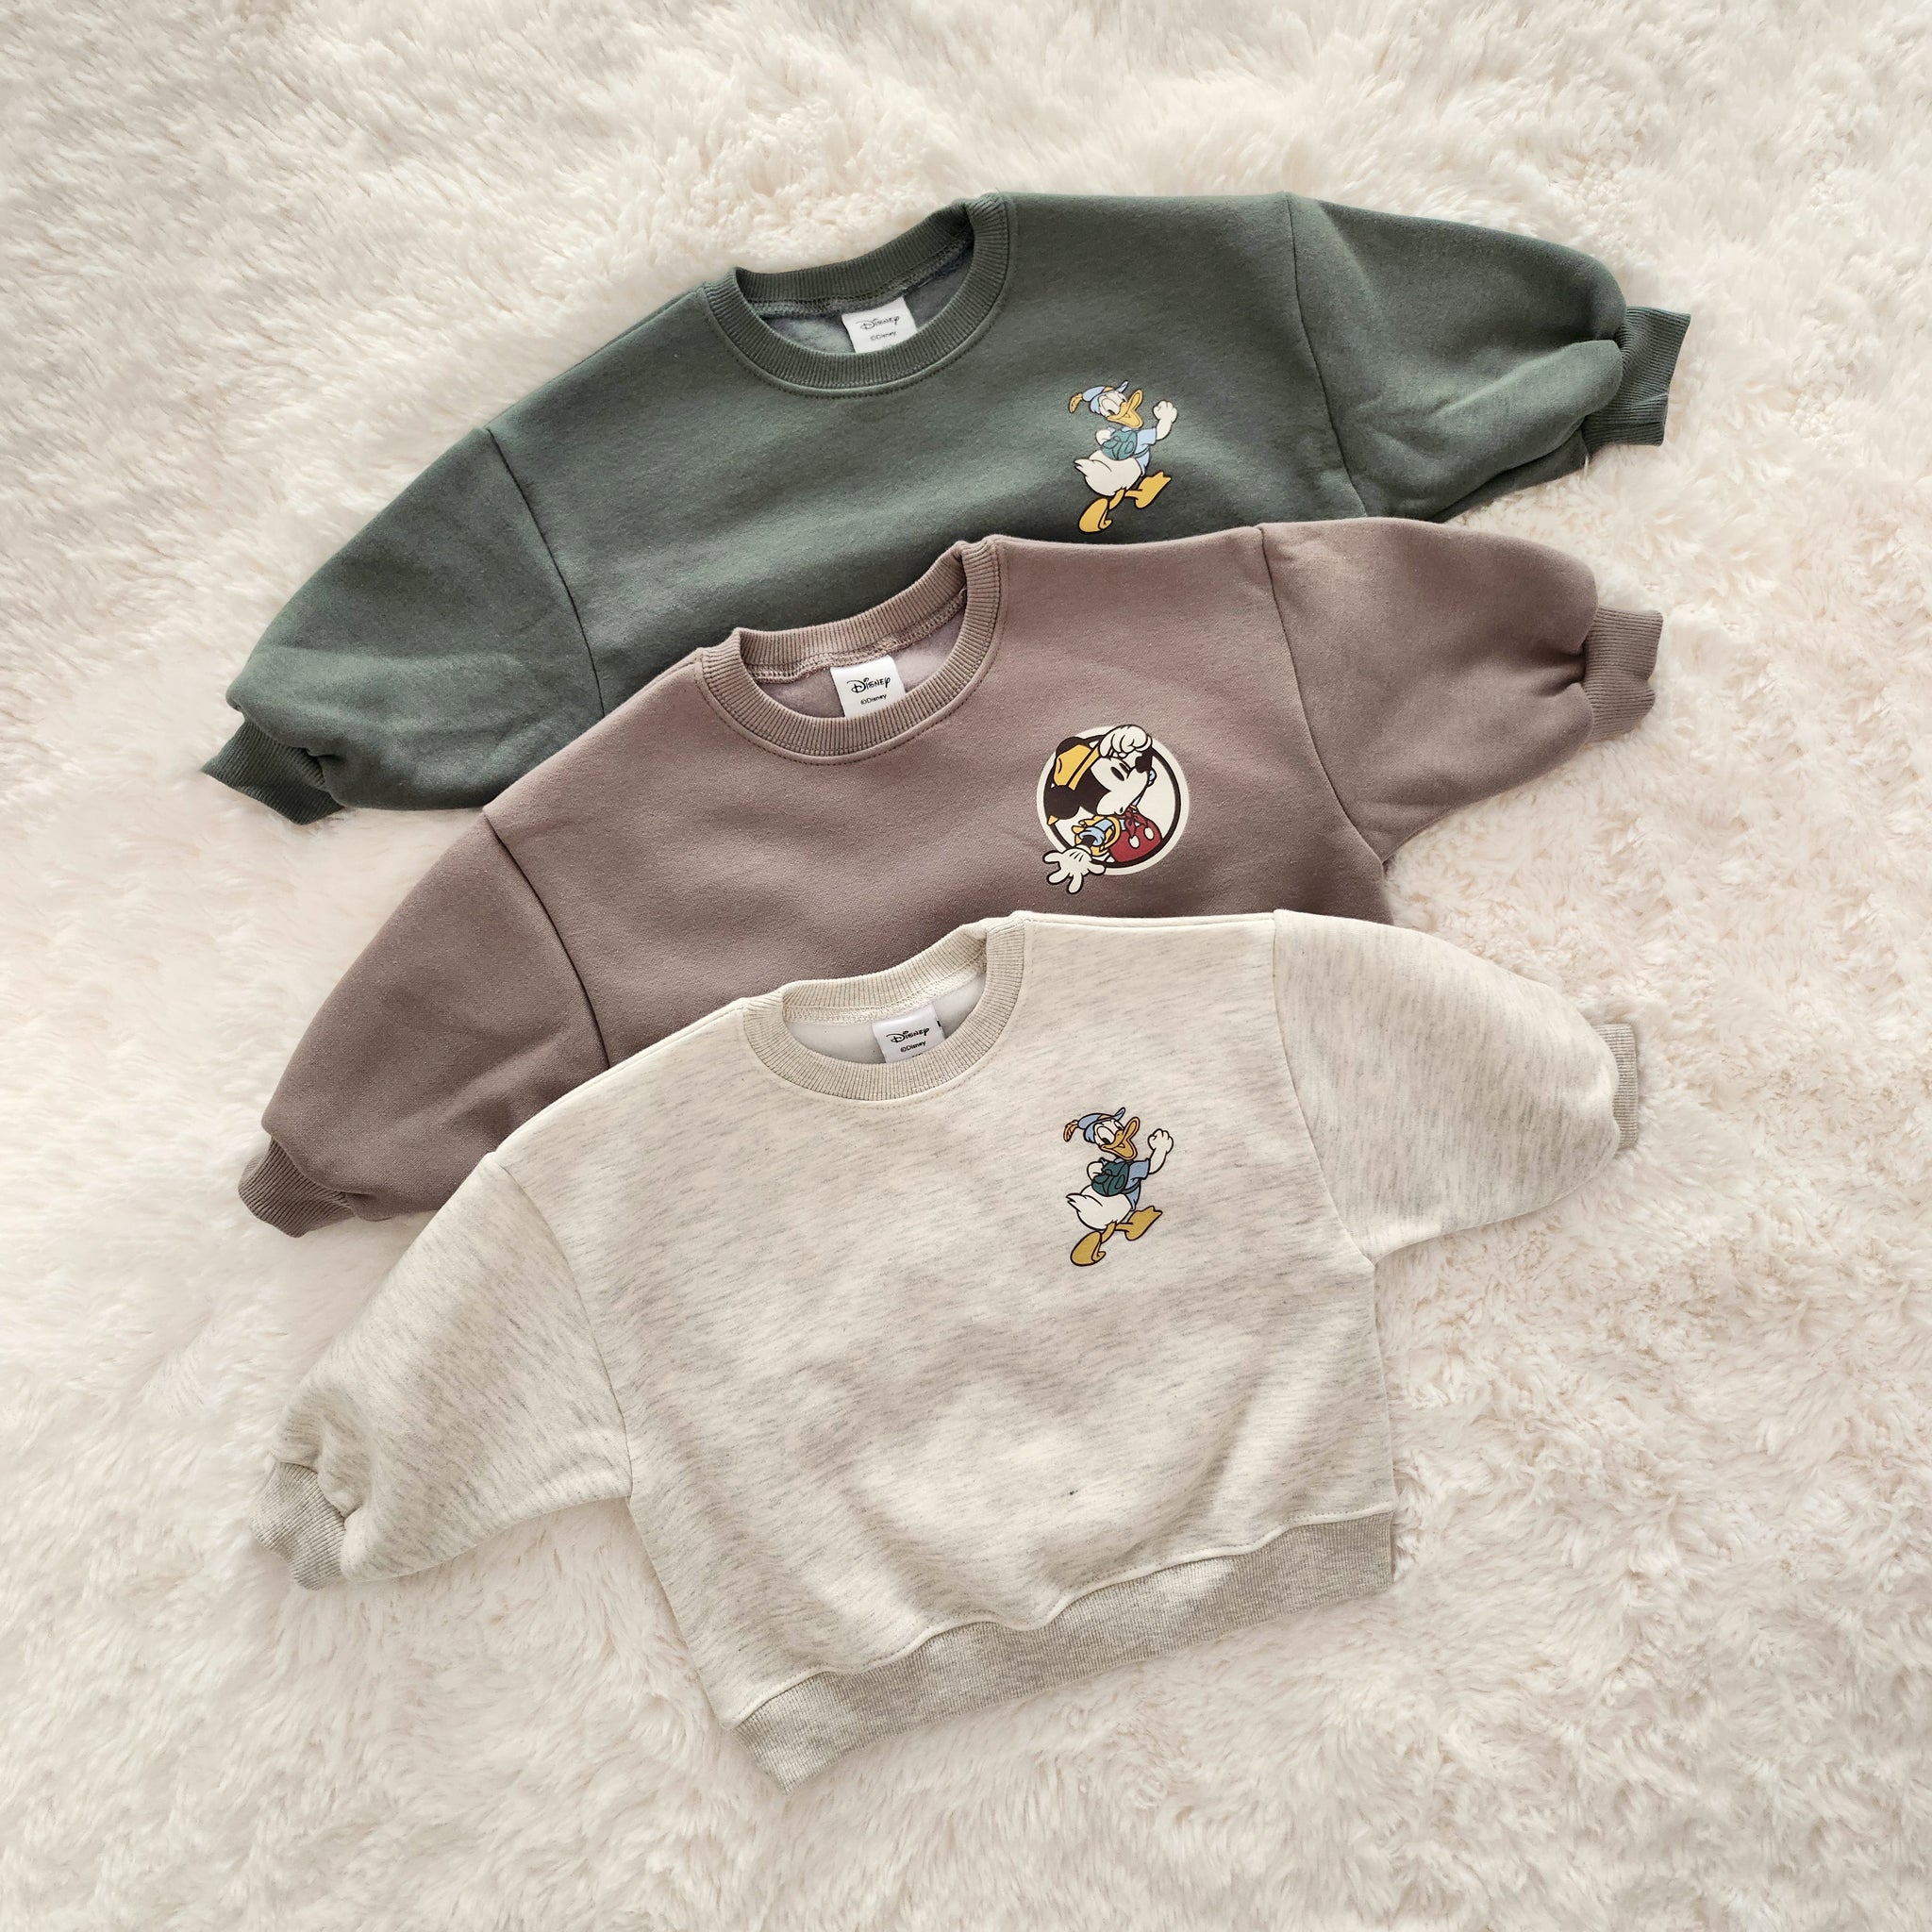 Toddler Disney Brushed Cotton Hiking Sweatshirt (1-6y) - 3 Colors